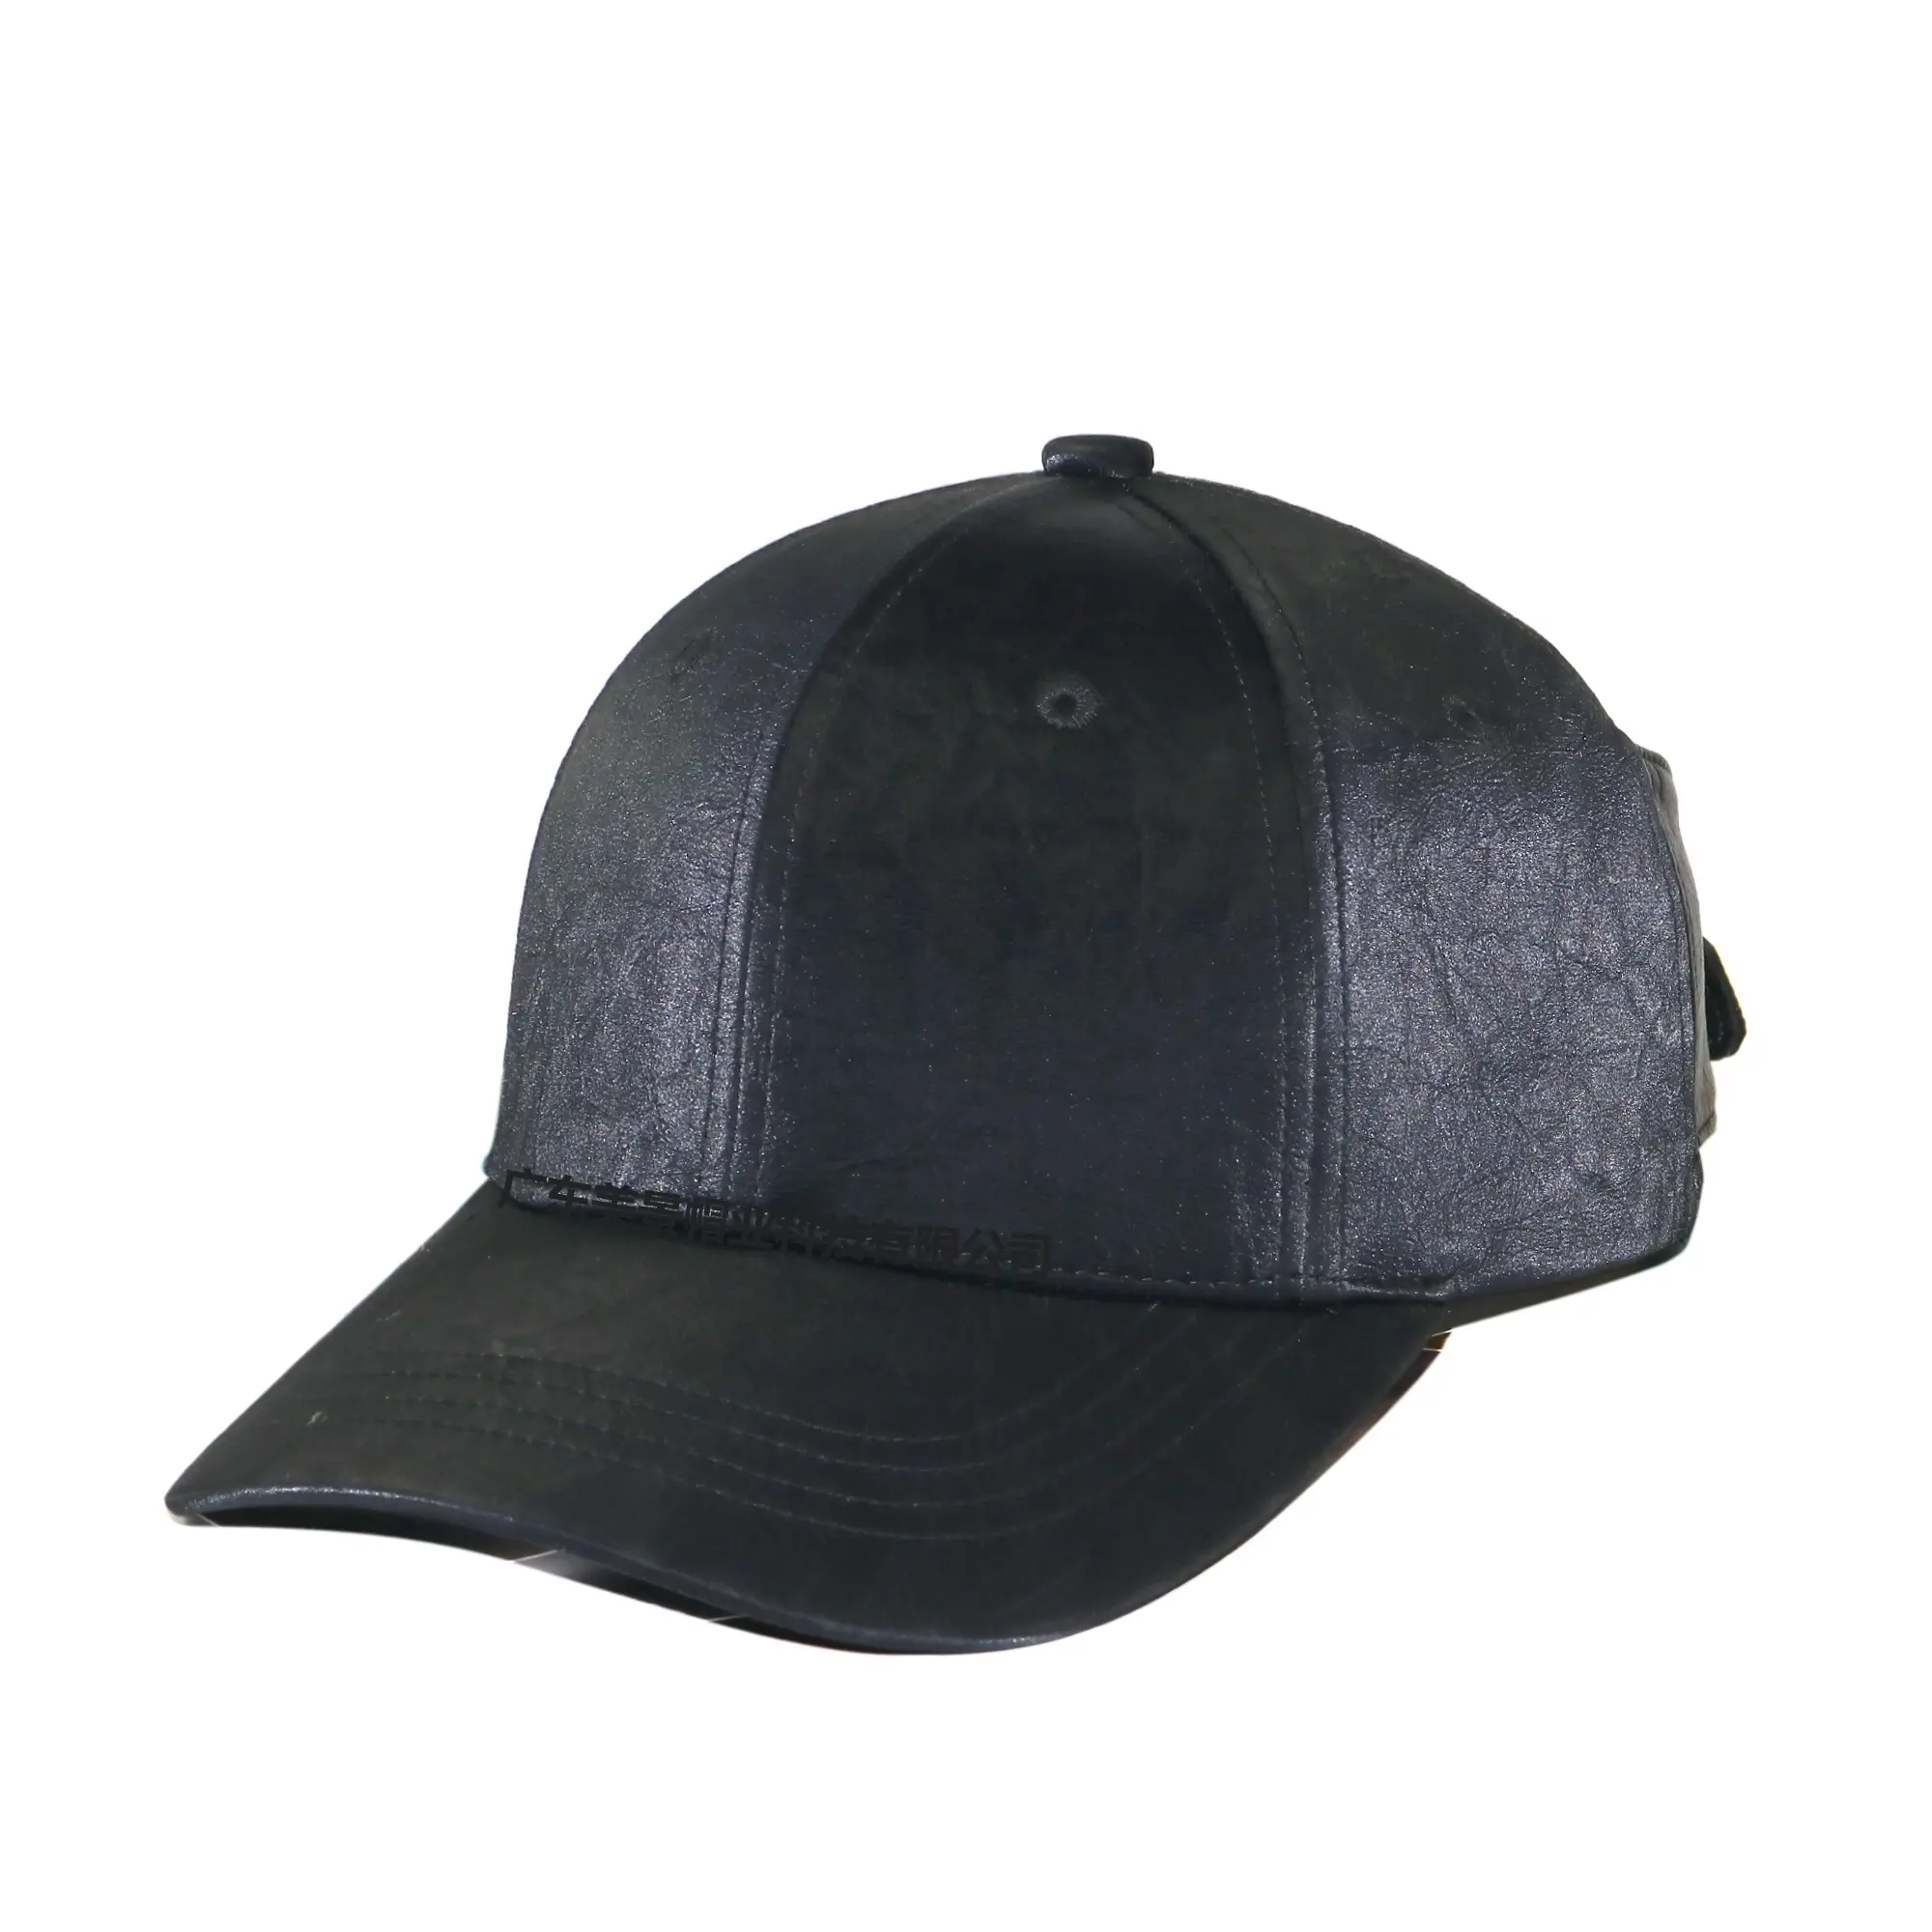 Фабрика Гуанчжоу, изготовленная на заказ, 6 панельных головных уборов, регулируемые кепки с низкой пиковой кепкой, зимние Бейсбольные Кепки из искусственной кожи, модные кепки